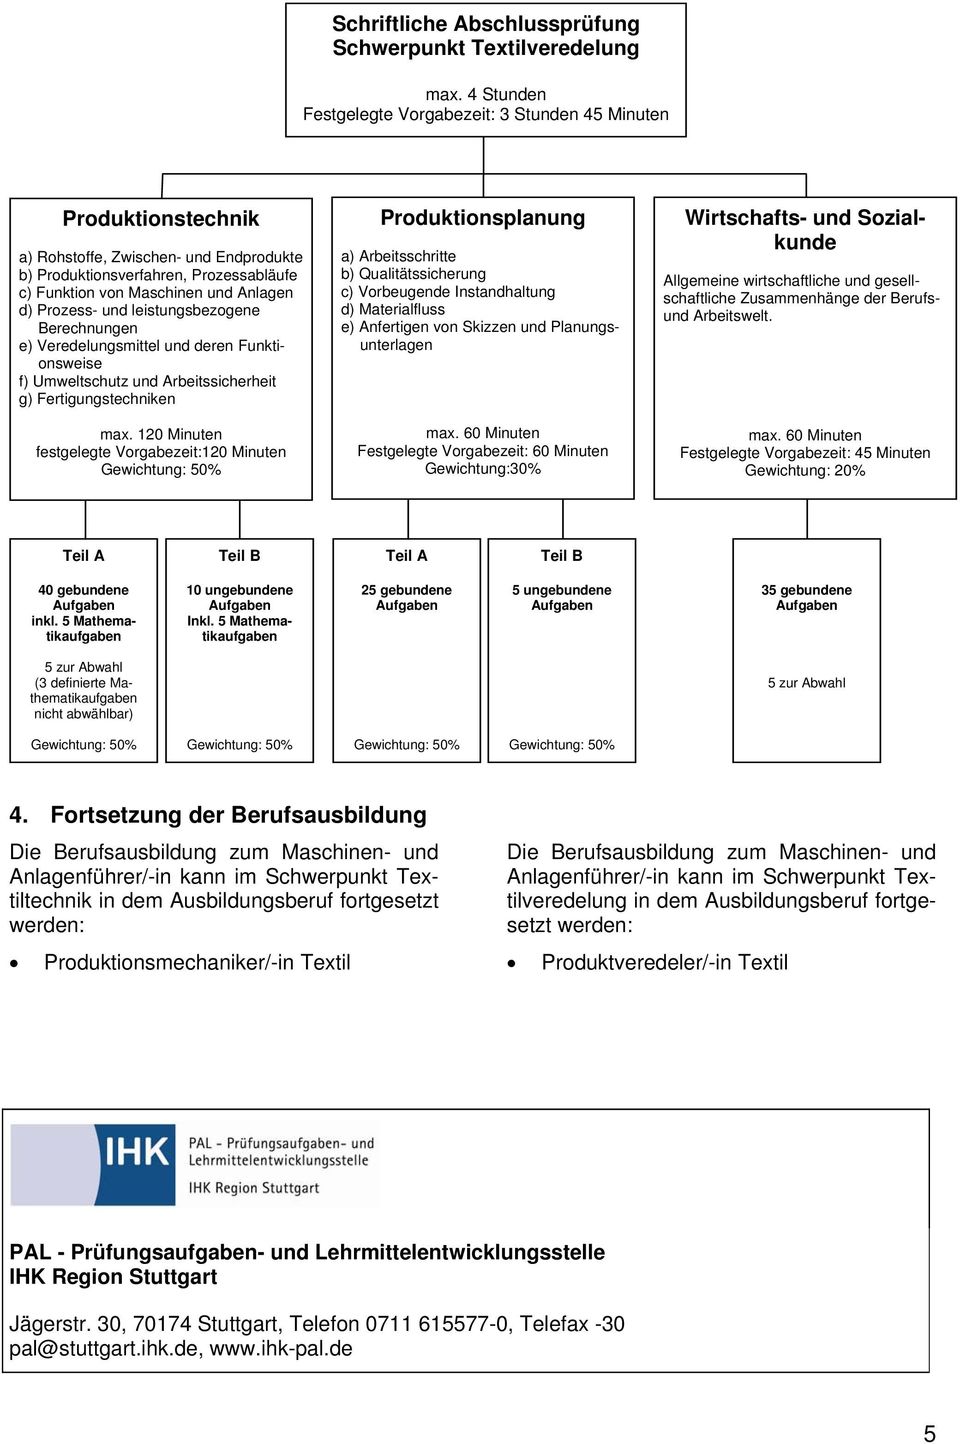 Prozess- und leistungsbezogene Berechnungen e) Veredelungsmittel und deren Funktionsweise f) Umweltschutz und Arbeitssicherheit g) Fertigungstechniken max.